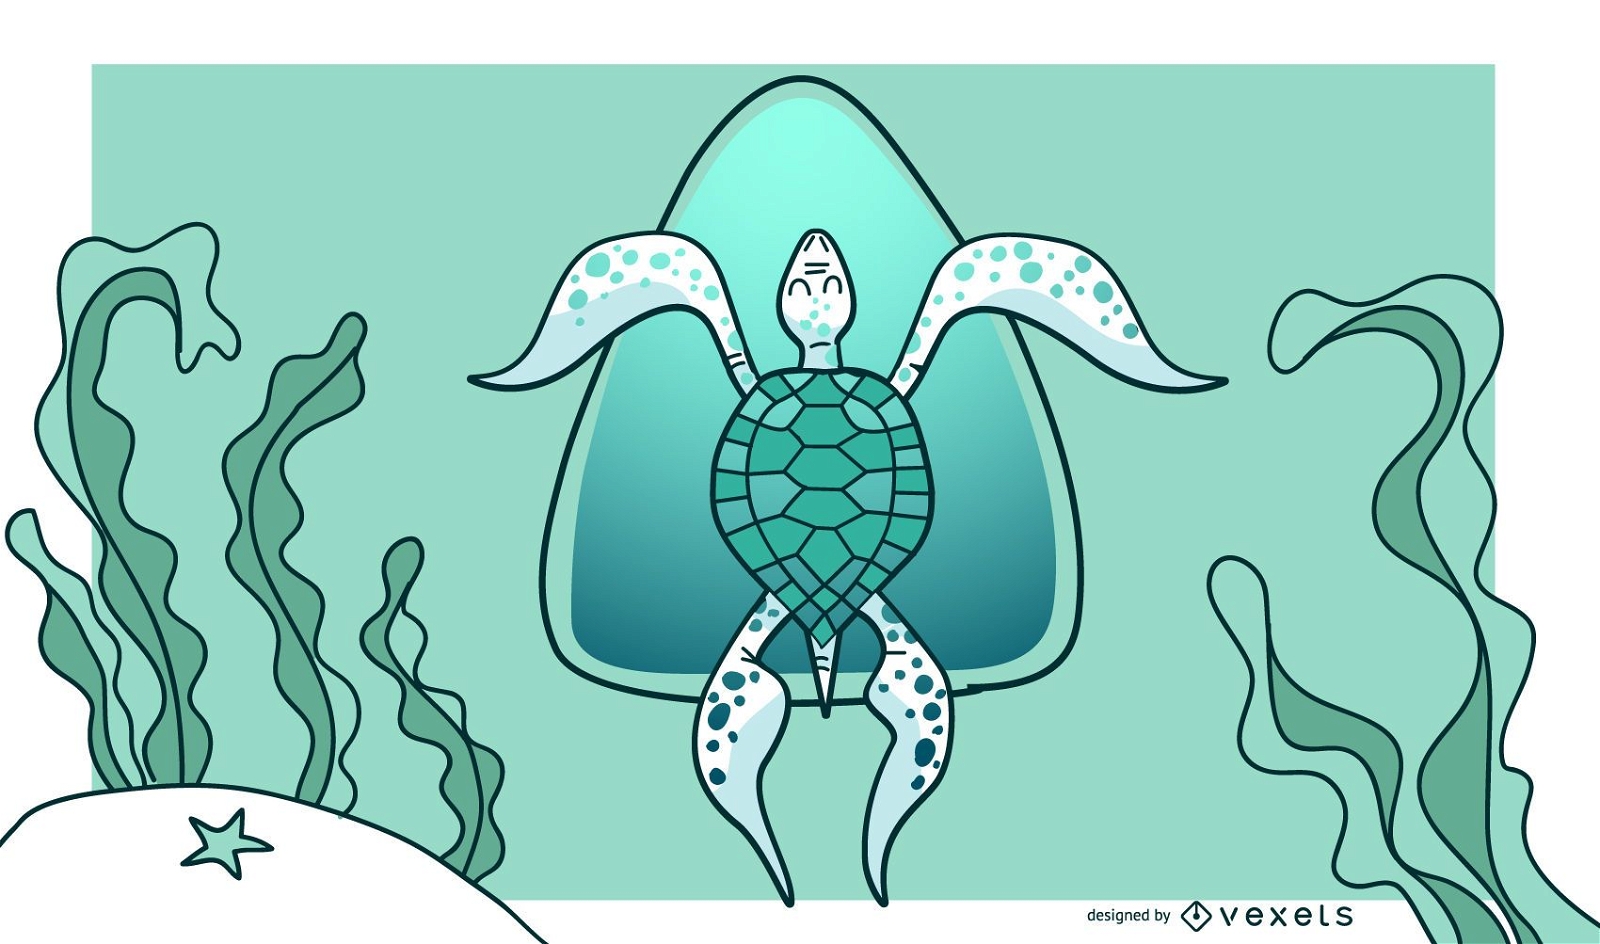 Stilvolles grünes Schildkröten-Hintergrunddesign